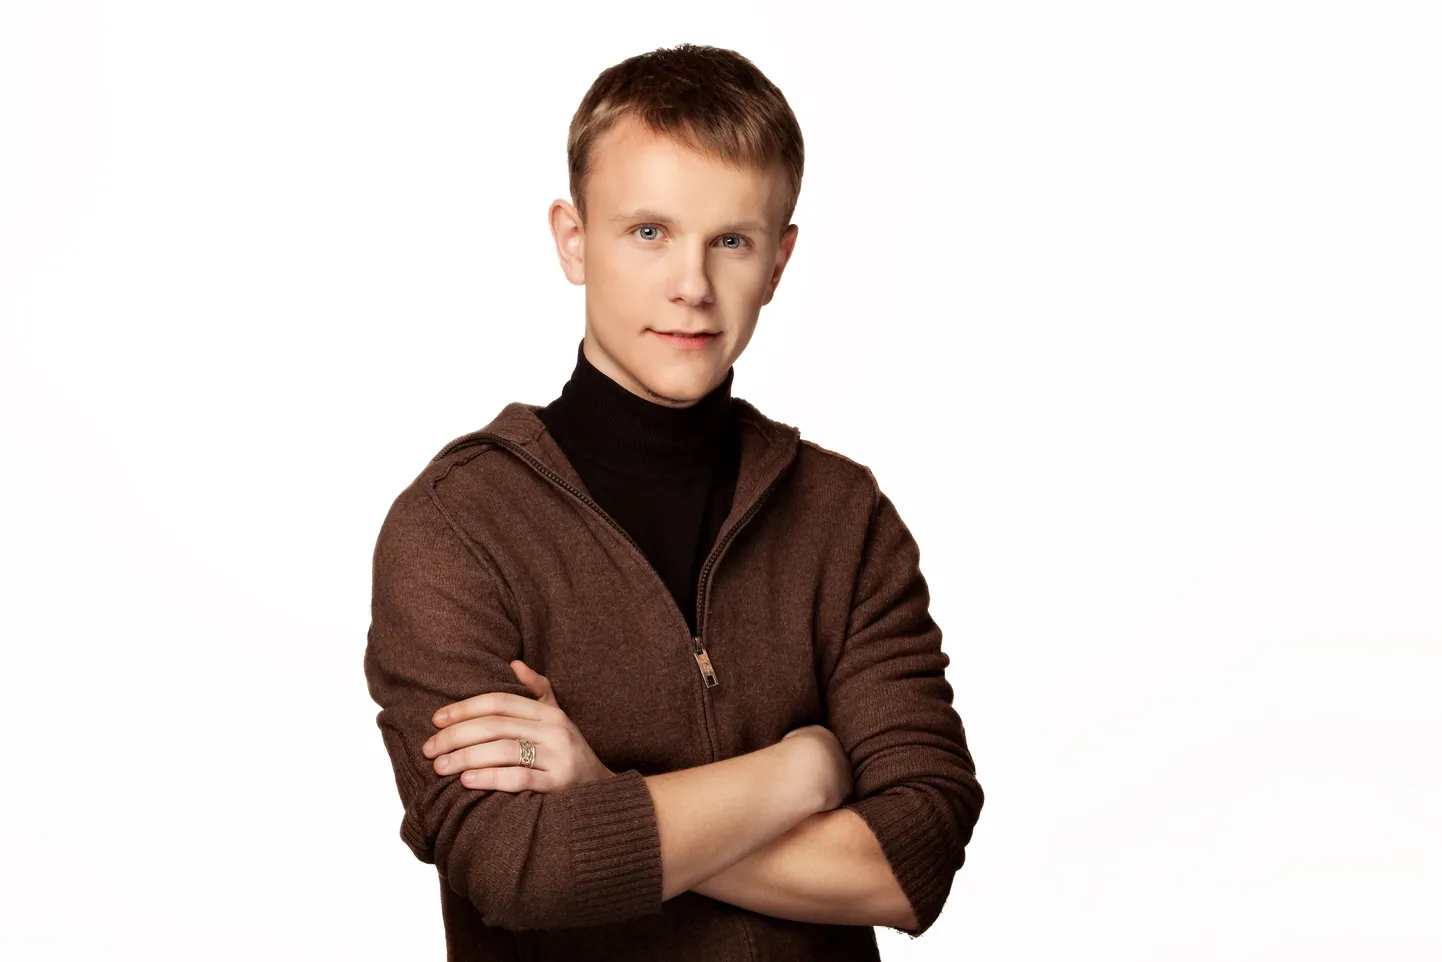 Eesti otsib superstaari finalist Leemet Onno